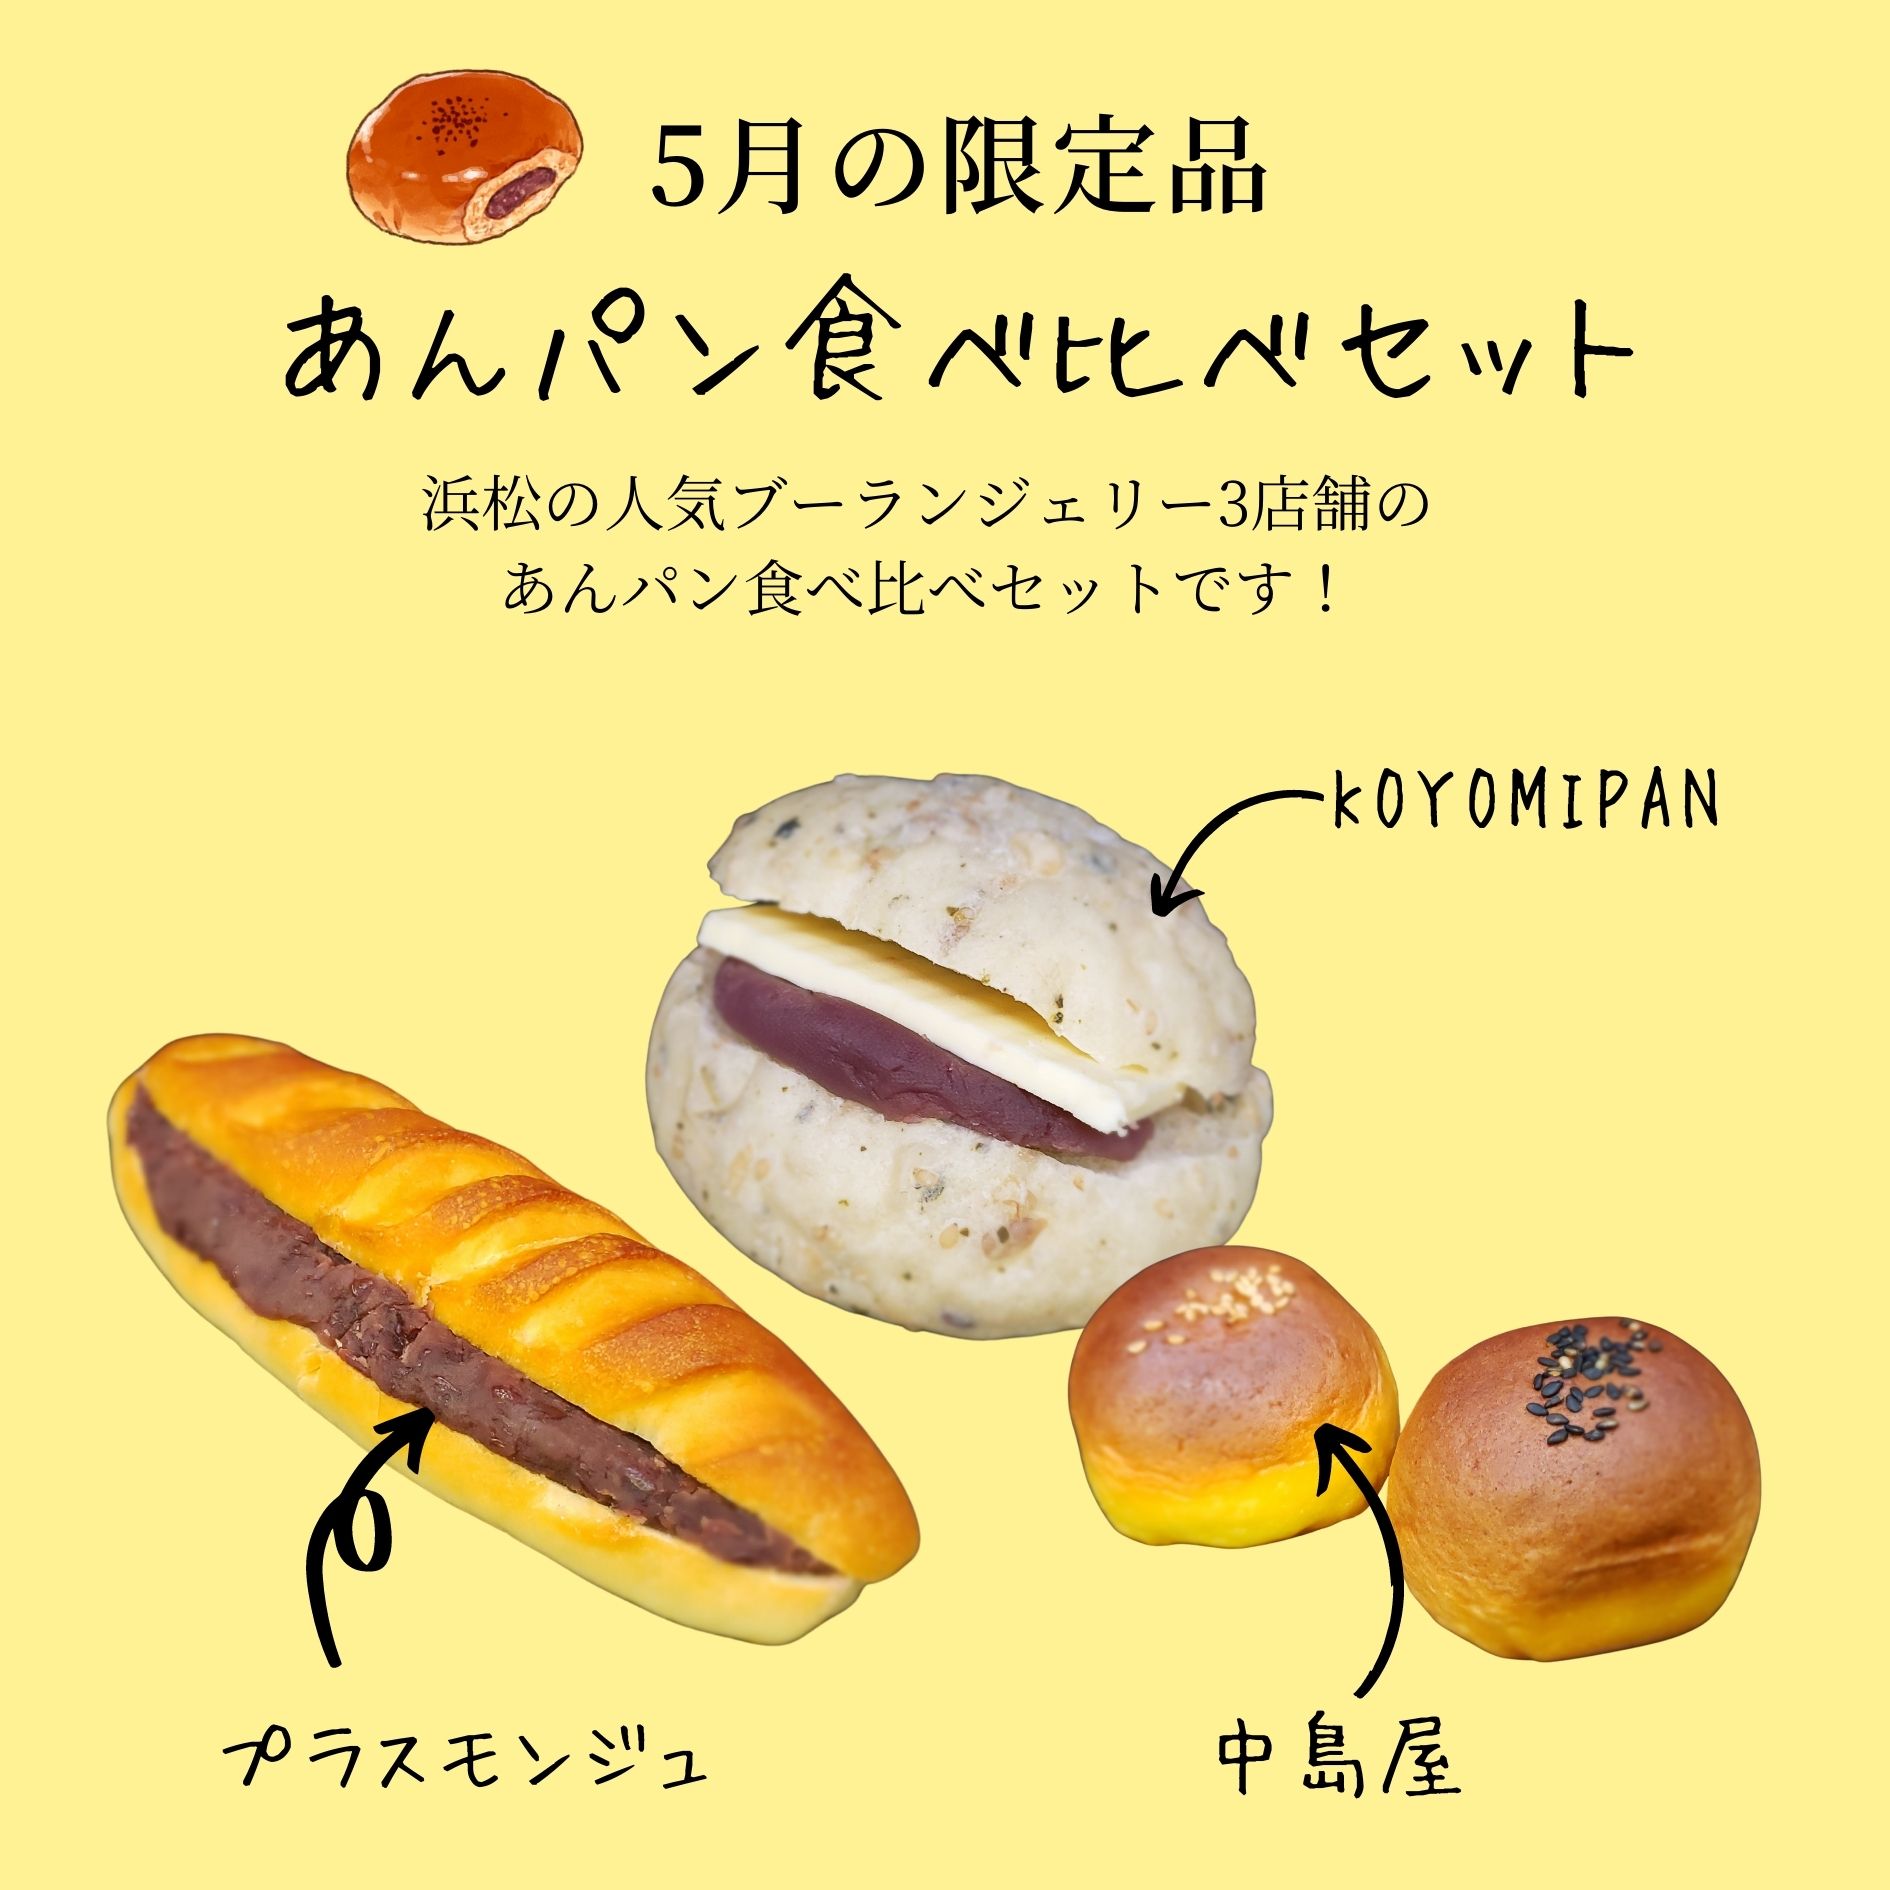 【5月の限定品】人気ブーランジェリーのあんパン食べ比べセット